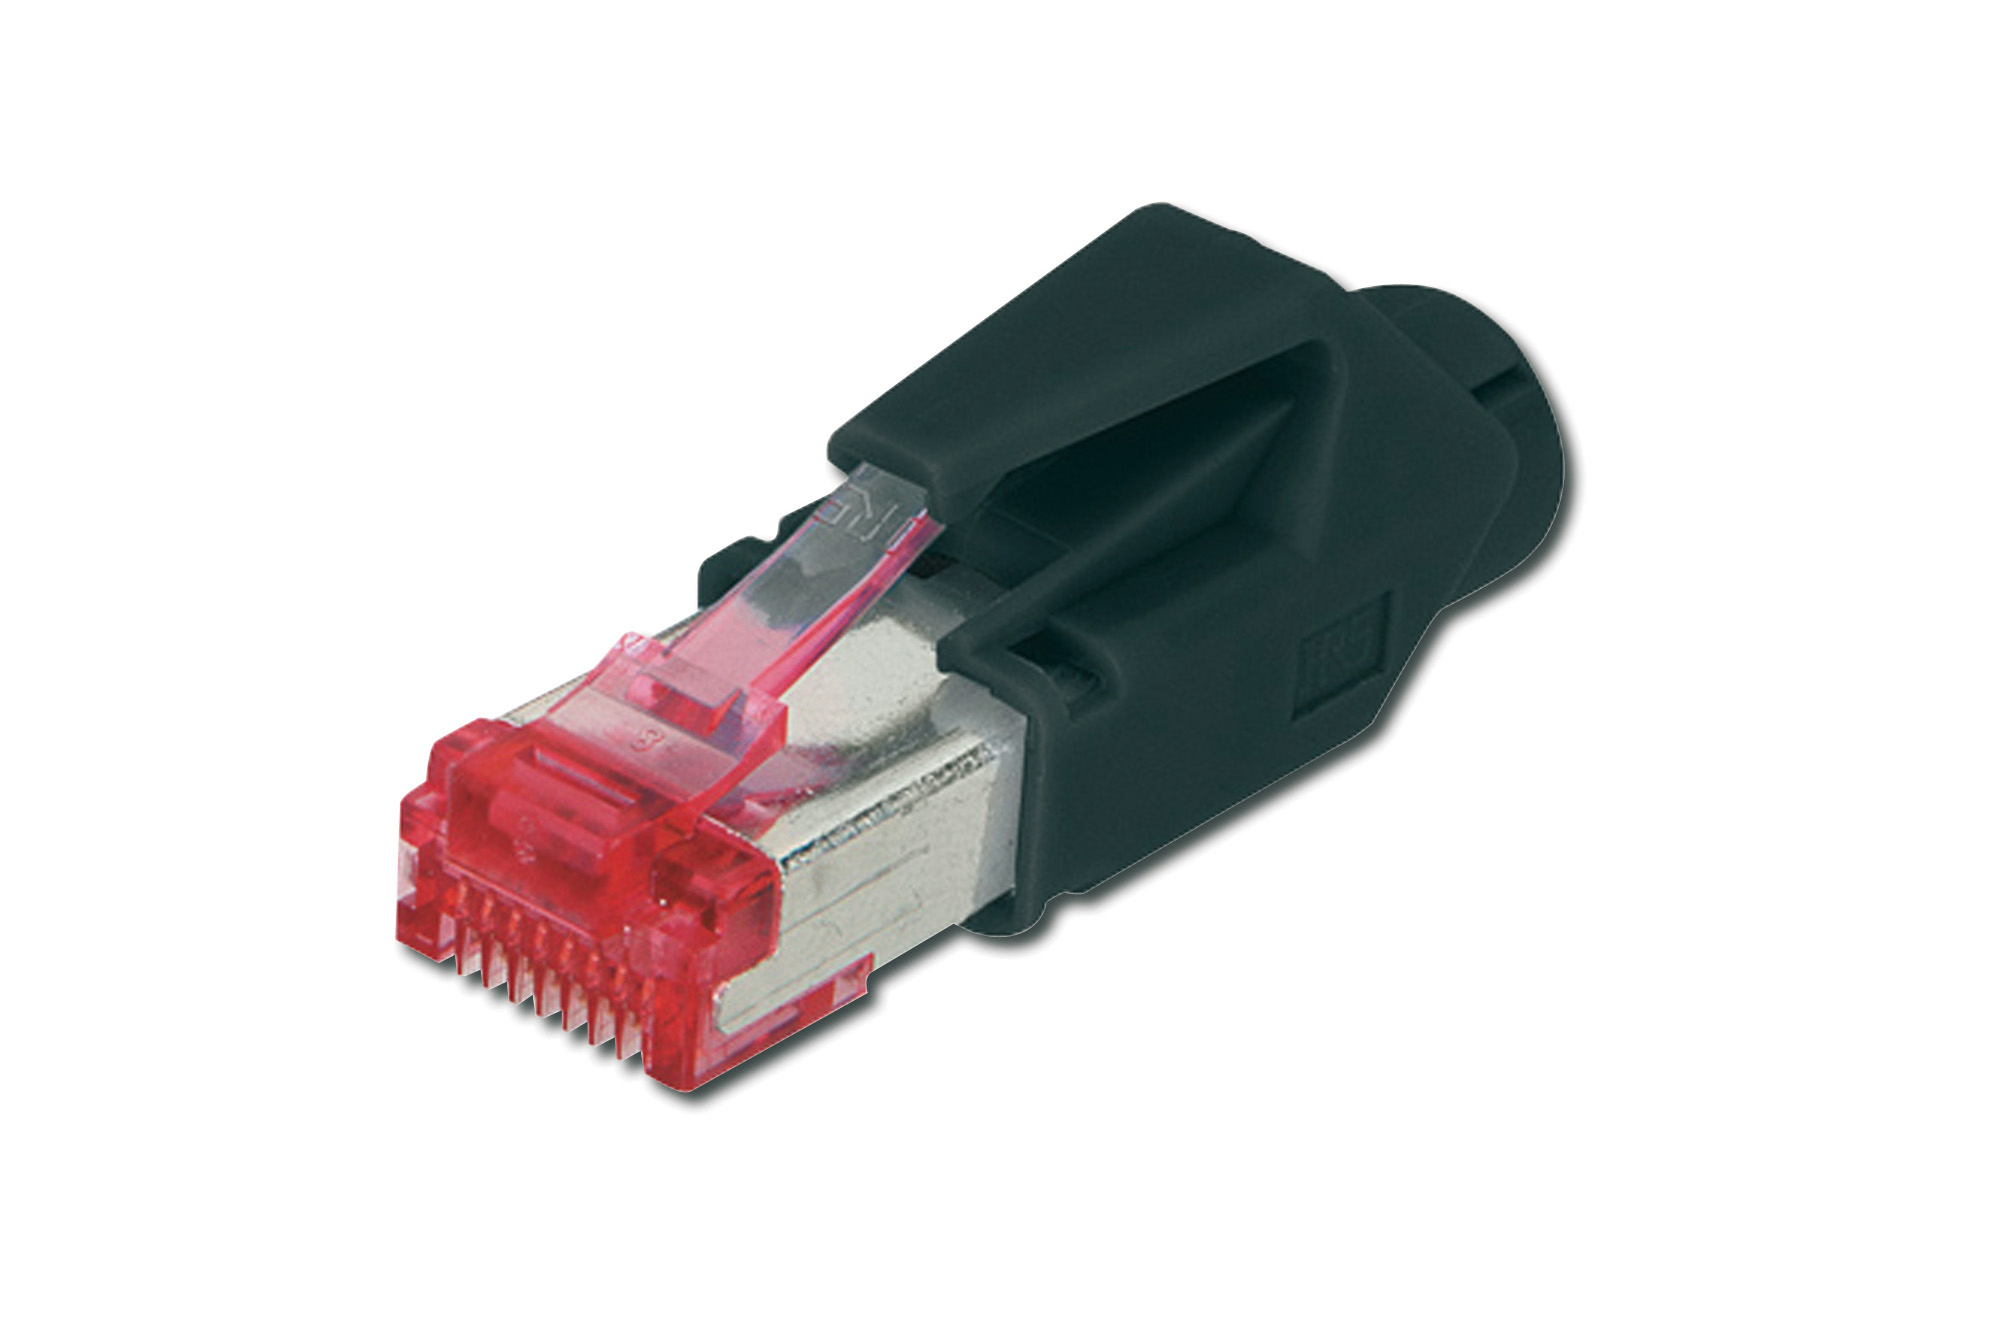 Photos - Cable (video, audio, USB) Digitus Hirose Modular Plug, CAT 6 TM 21 A-MO6 8/8 HRS 